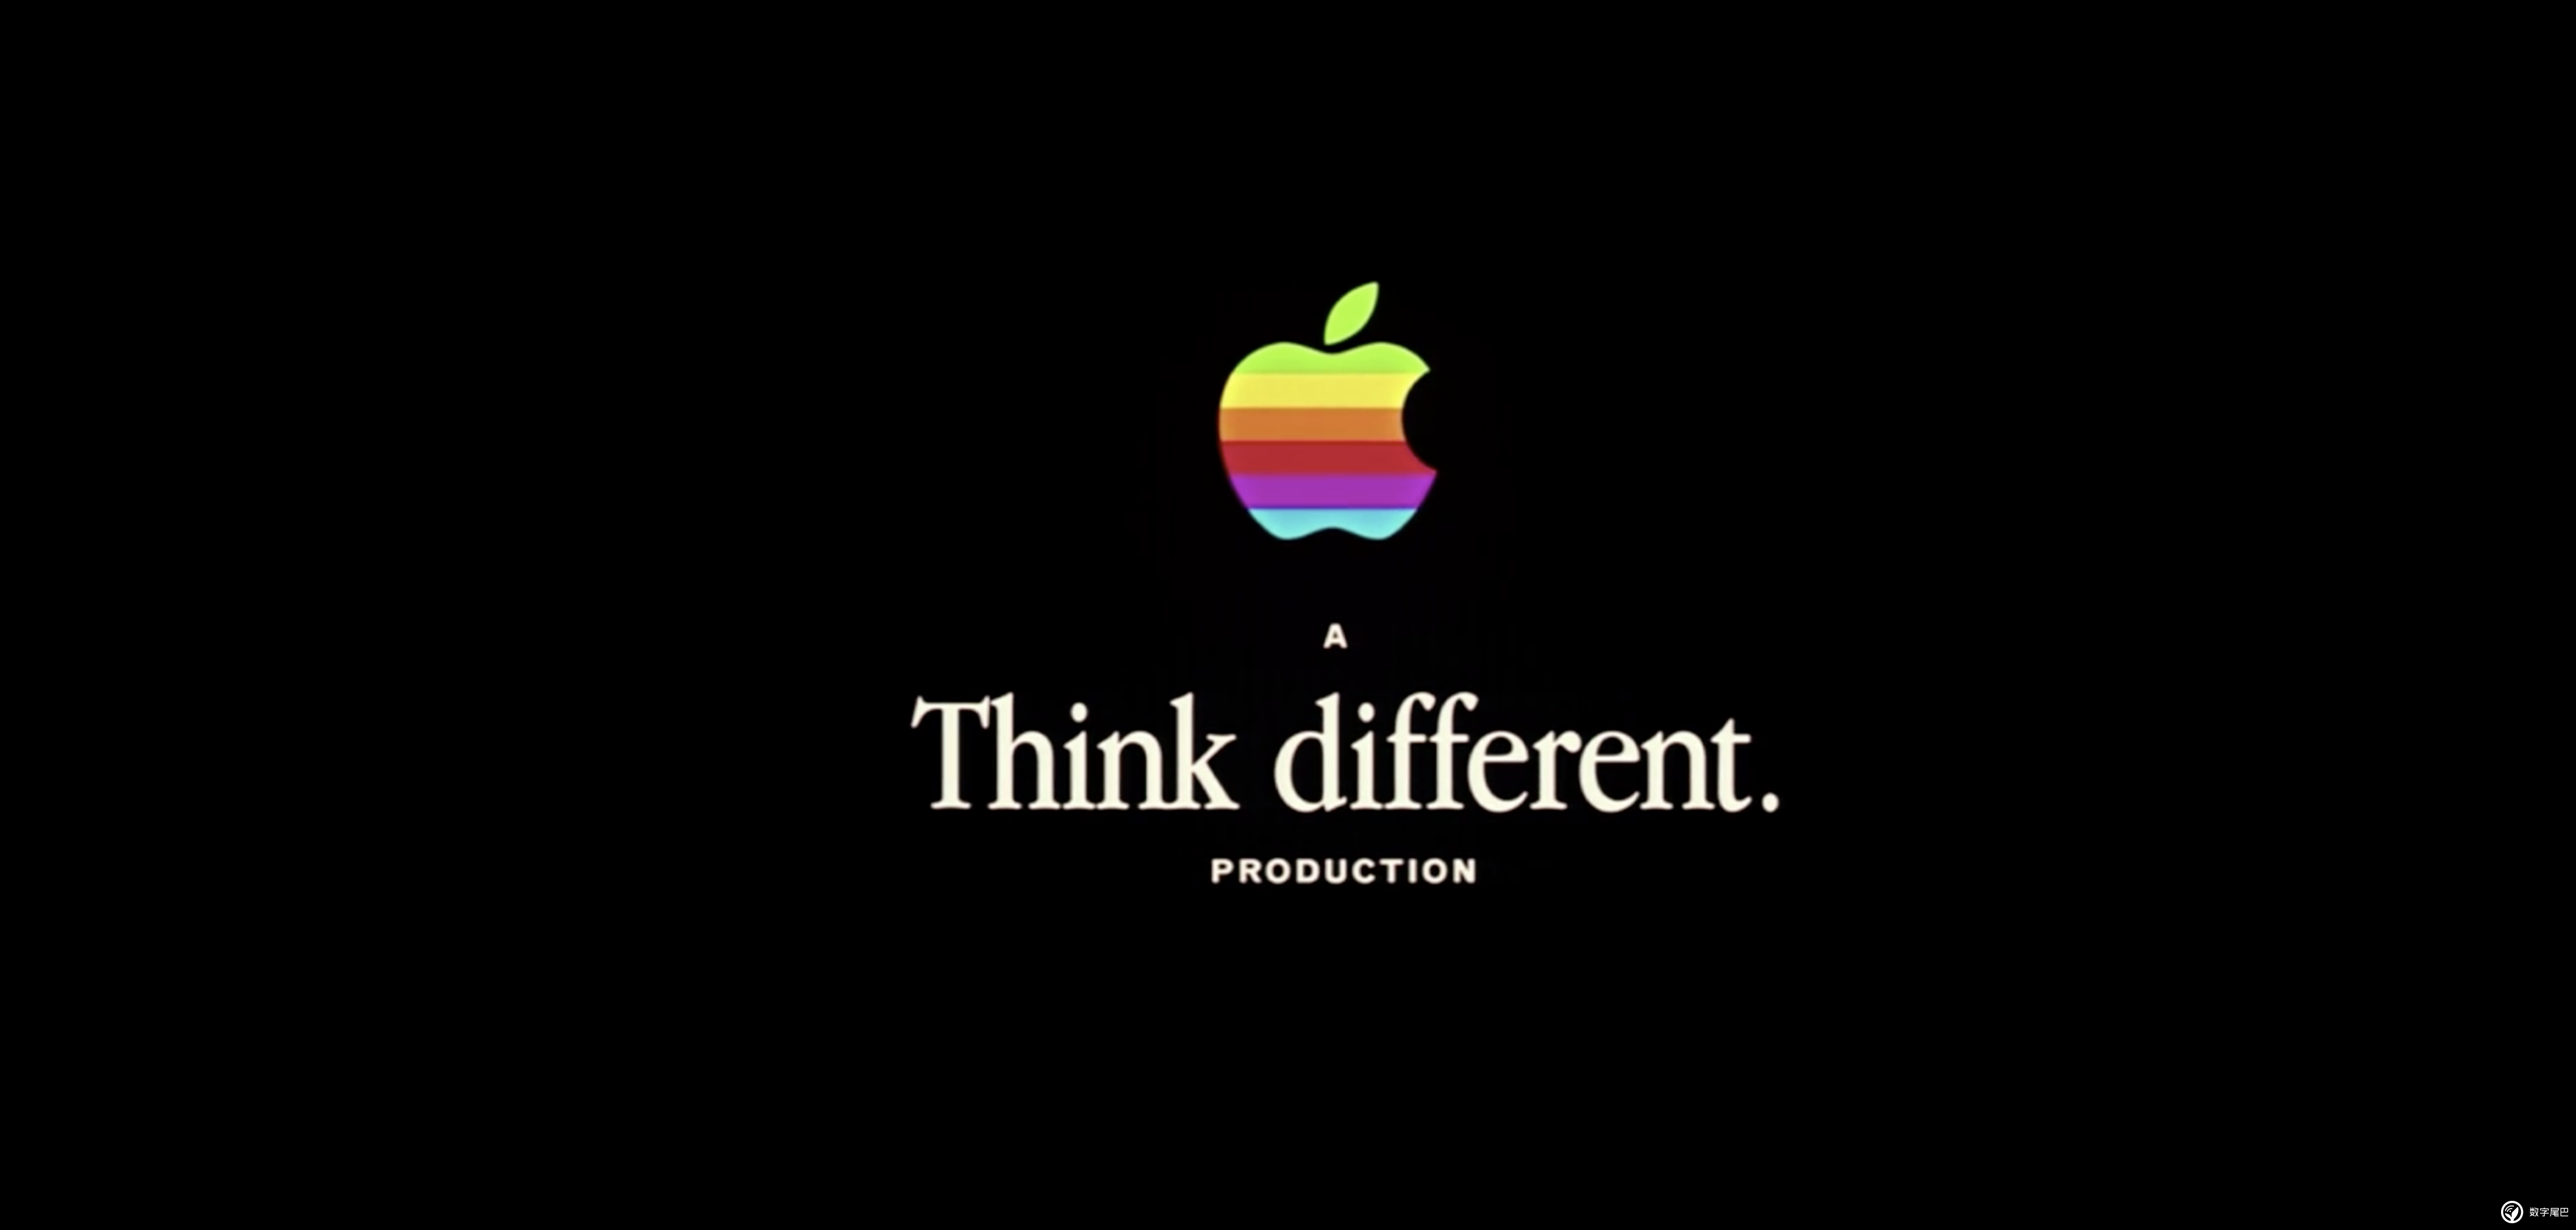 苹果手机的广告语苹果手机的创意广告语